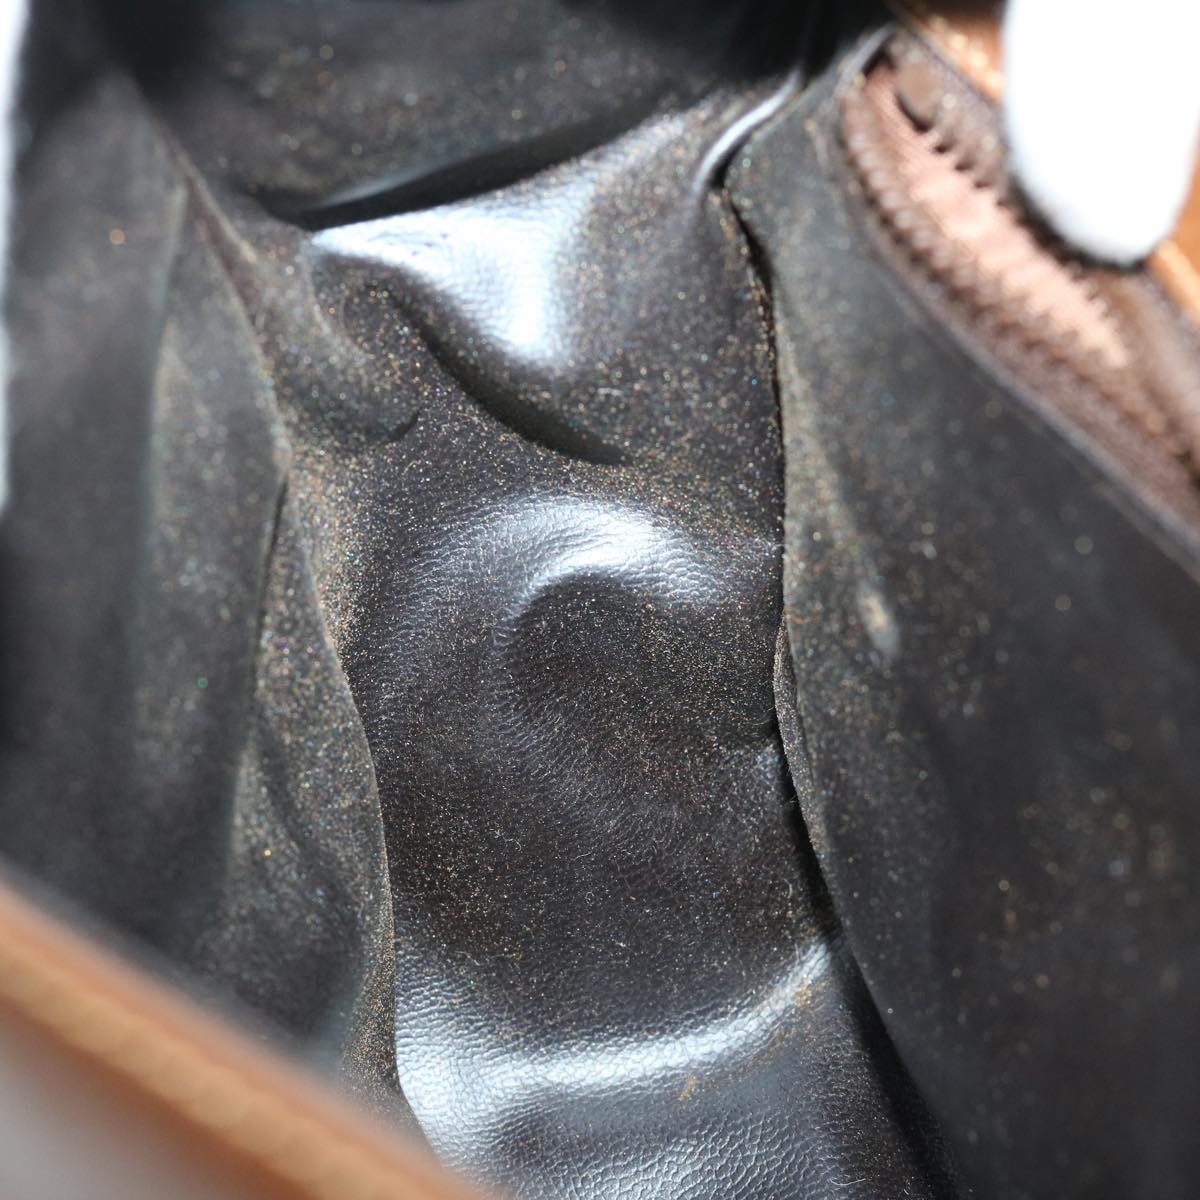 CELINE Shoulder Bag Leather Brown Auth 68342